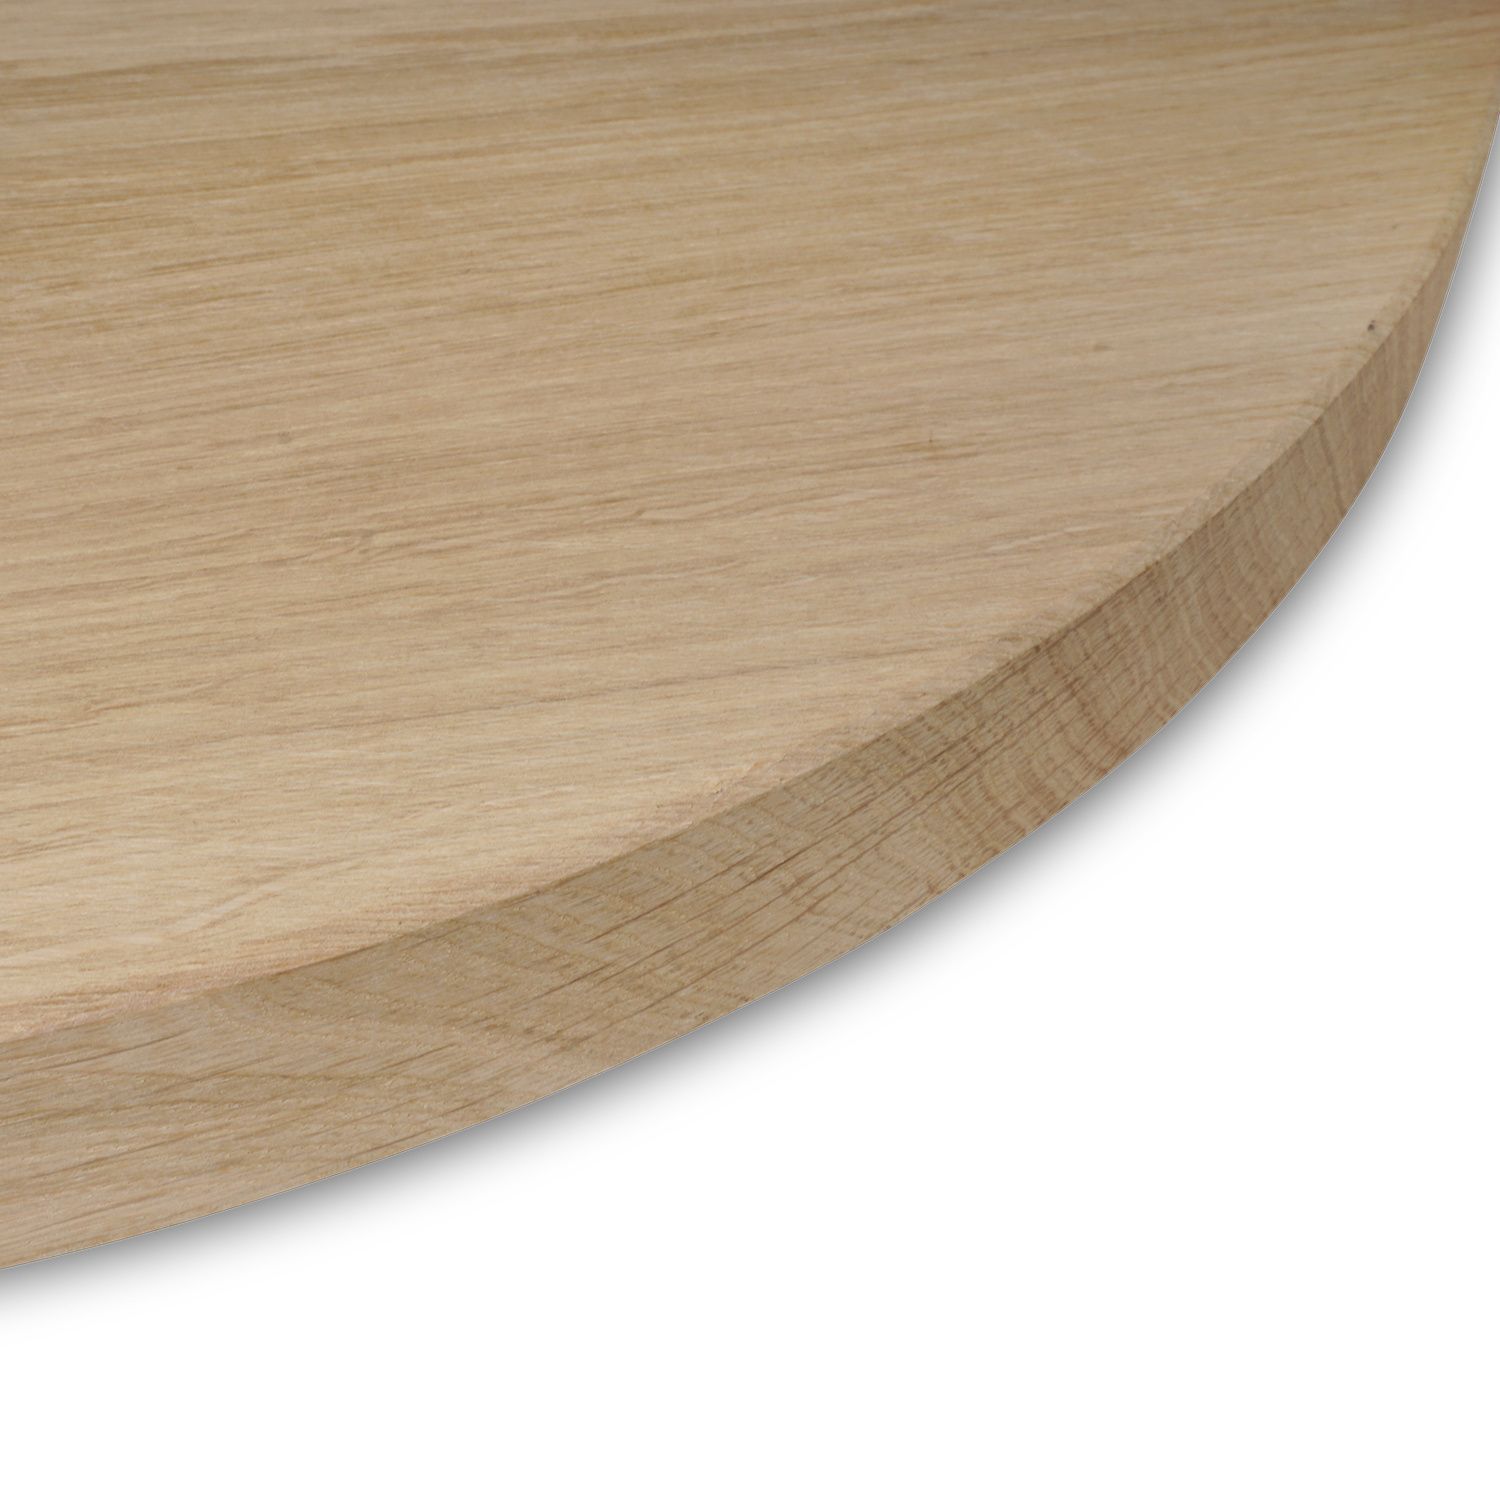  Tischplatte Eiche rund nach Maß - 4 cm dick (1-Schicht) - Breite Lamellen (10 - 12 cm breit) - Eichenholz A-Qualität - verleimt & künstlich getrocknet (HF 8-12%) - Durchmesser: 50 - 117 cm